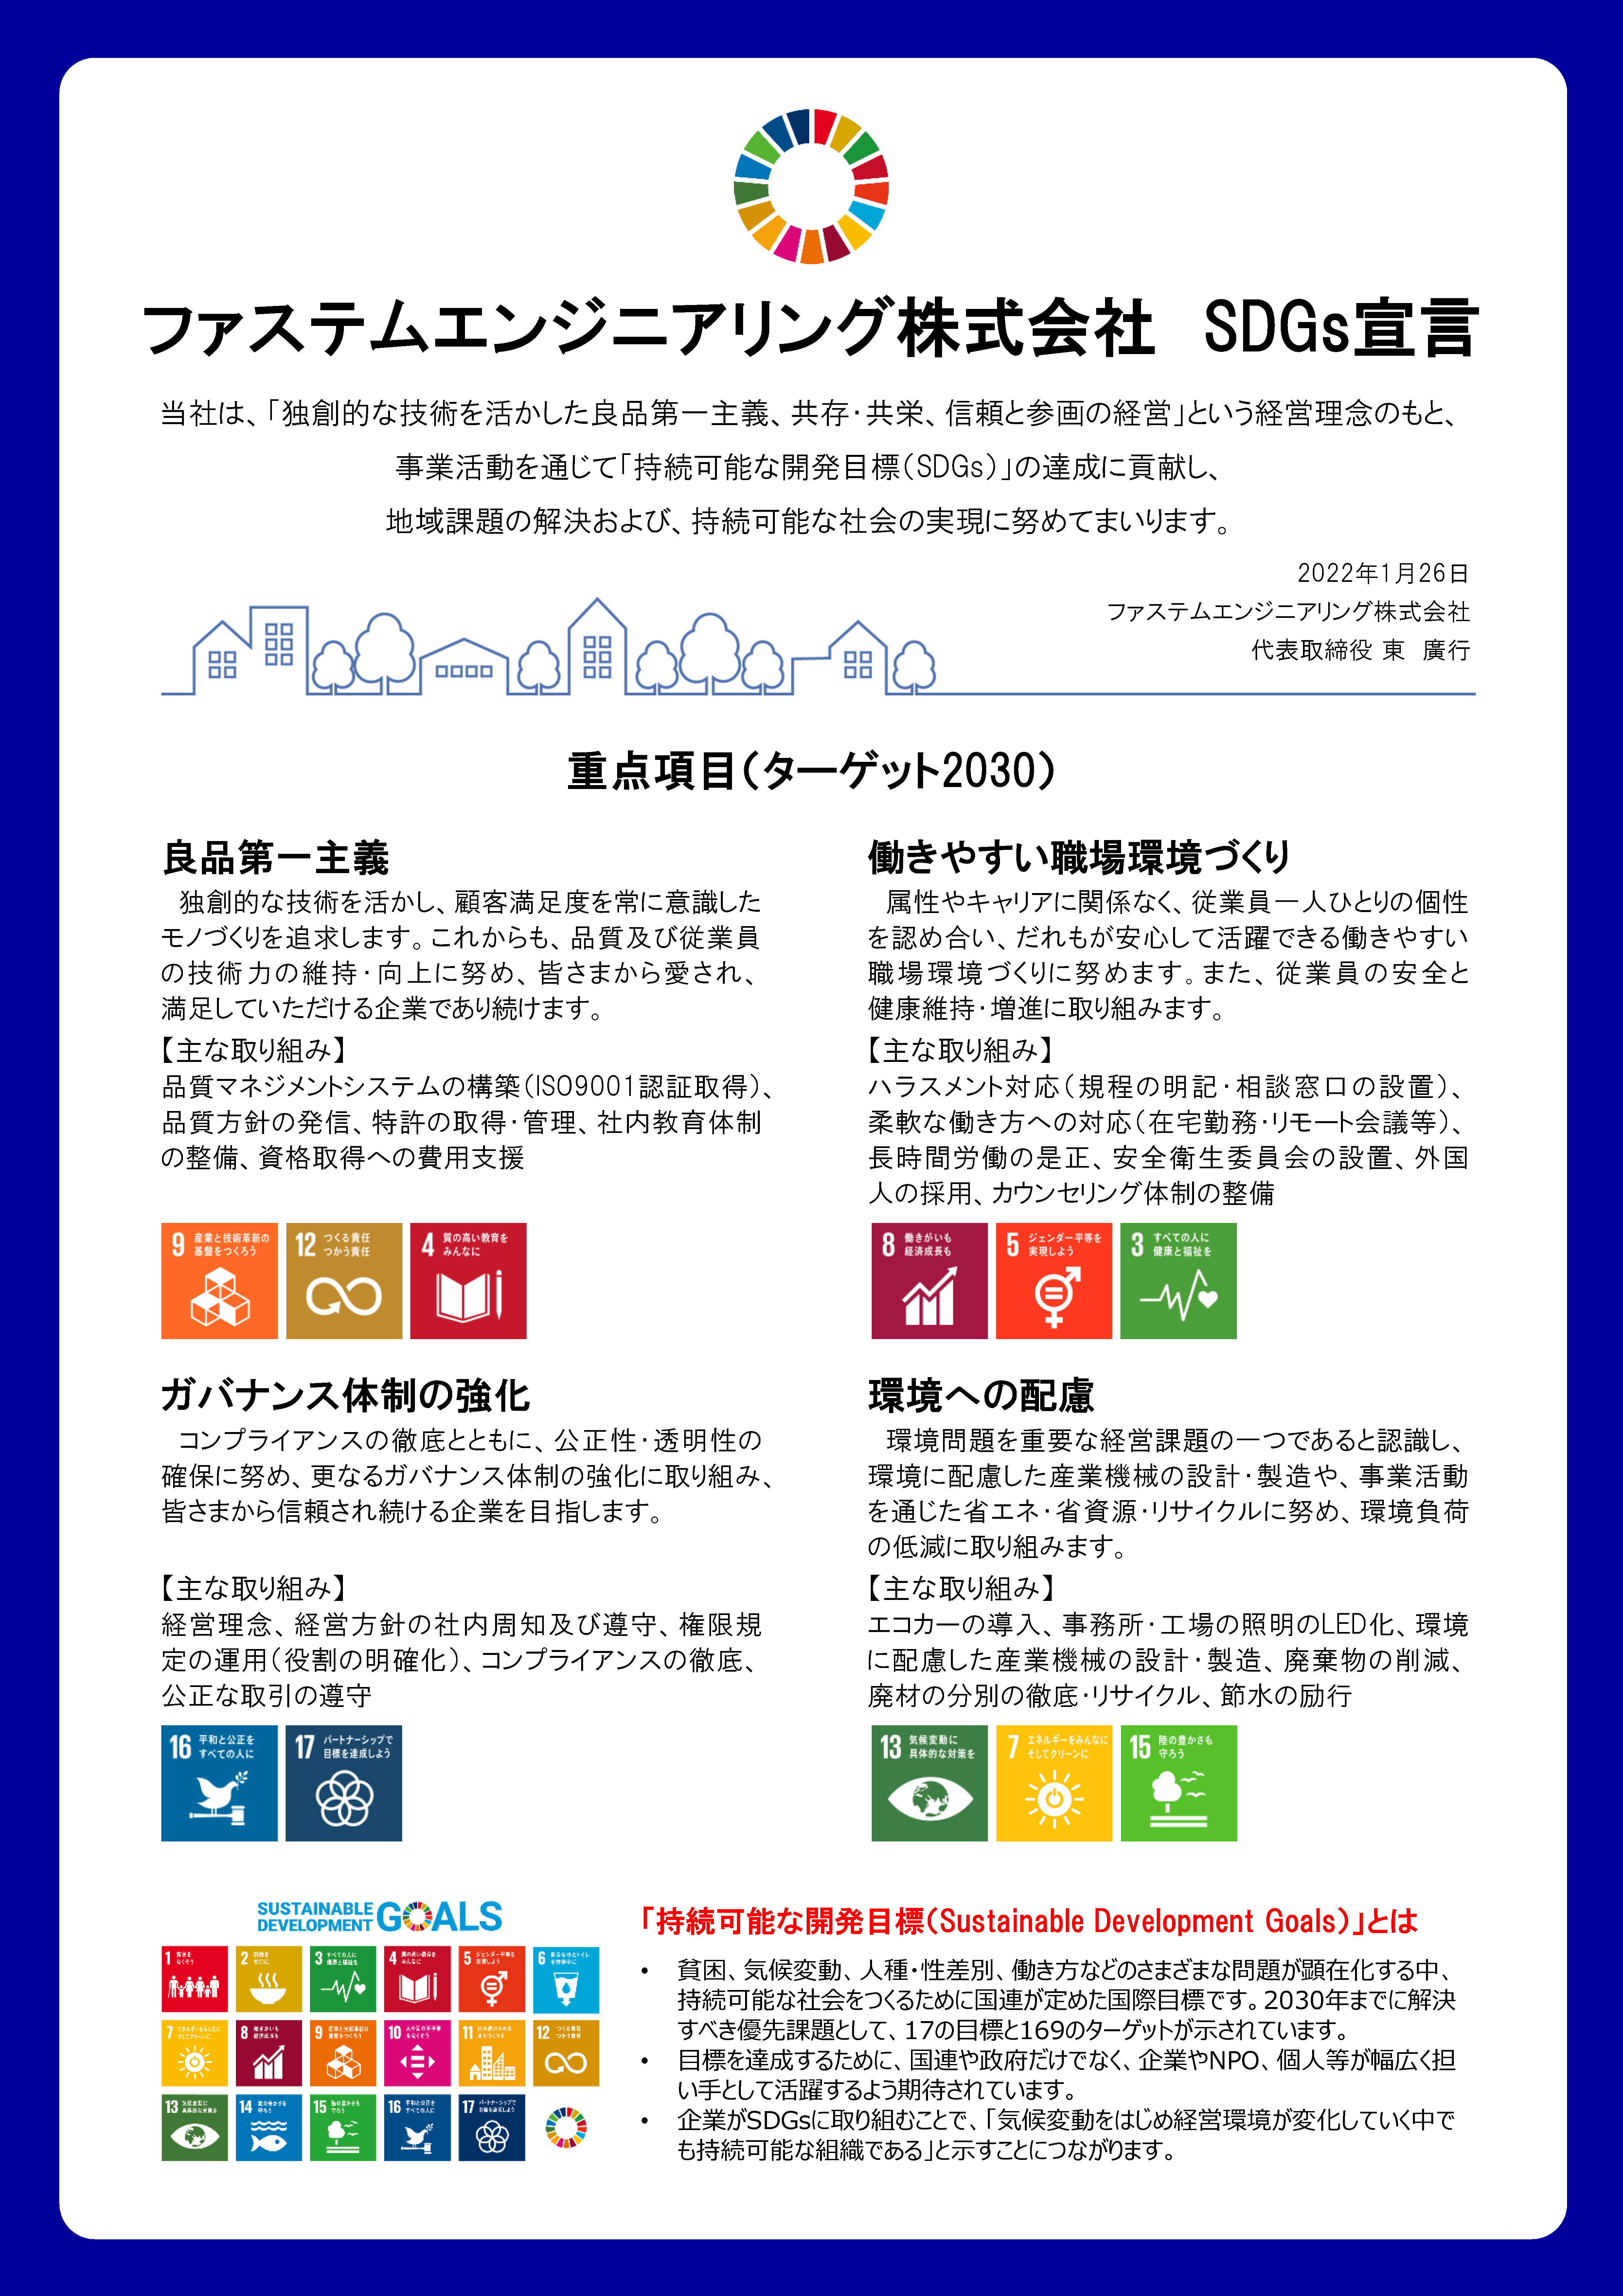 ファステムエンジニアリング株式会社 SDGs宣言